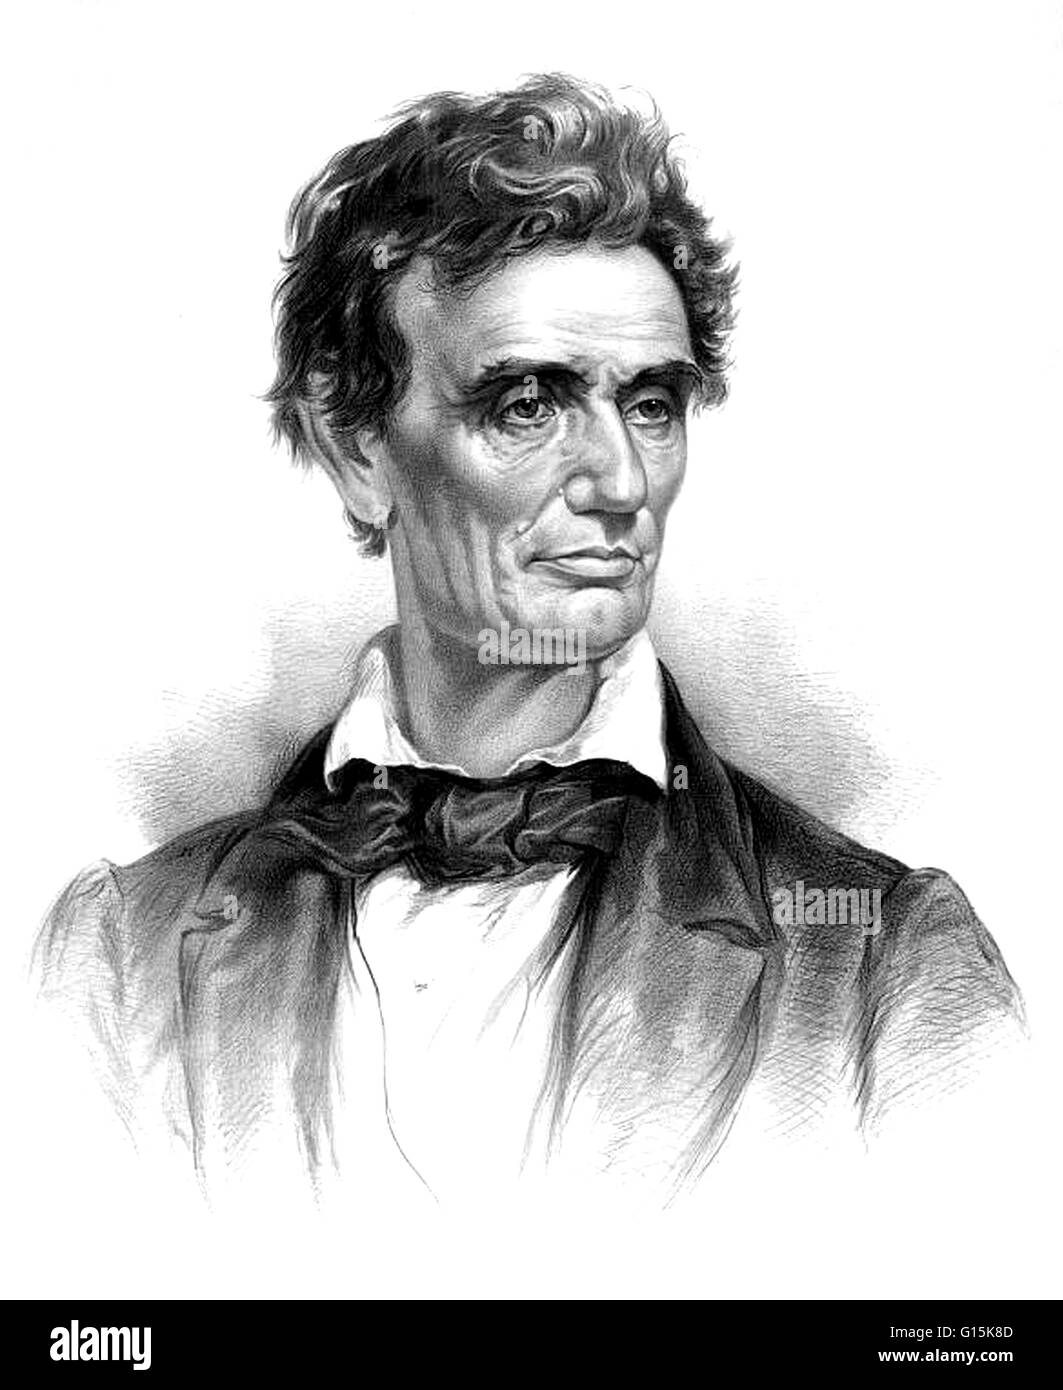 Abraham Lincoln (12 de febrero de 1809 - 15 de abril de 1865) fue el 16º Presidente de los Estados Unidos, desde marzo de 1861 hasta su asesinato en 1865. Él condujo a su país a la Guerra Civil Americana, la preservación de la Unión, mientras que el fin de la esclavitud, y la promoción Foto de stock